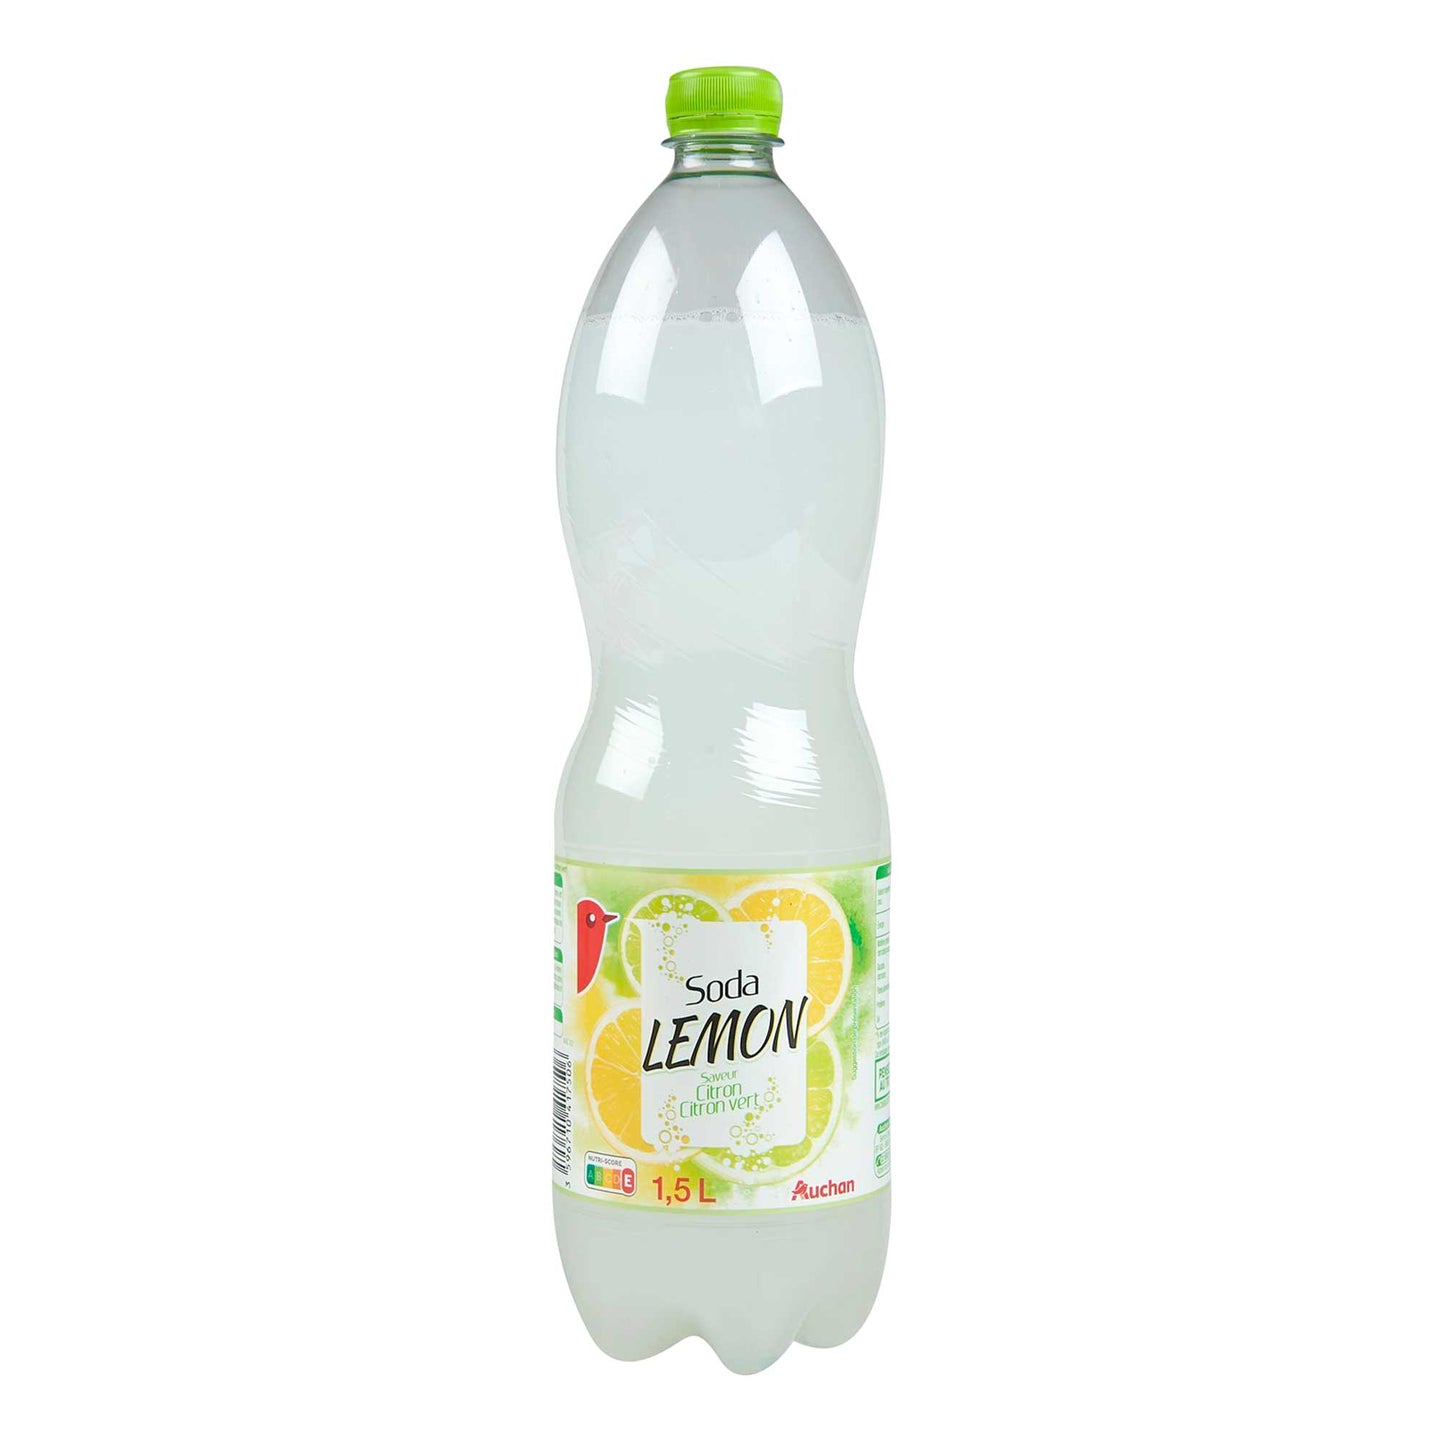 Soda Lemon - 1,5L - Auchan